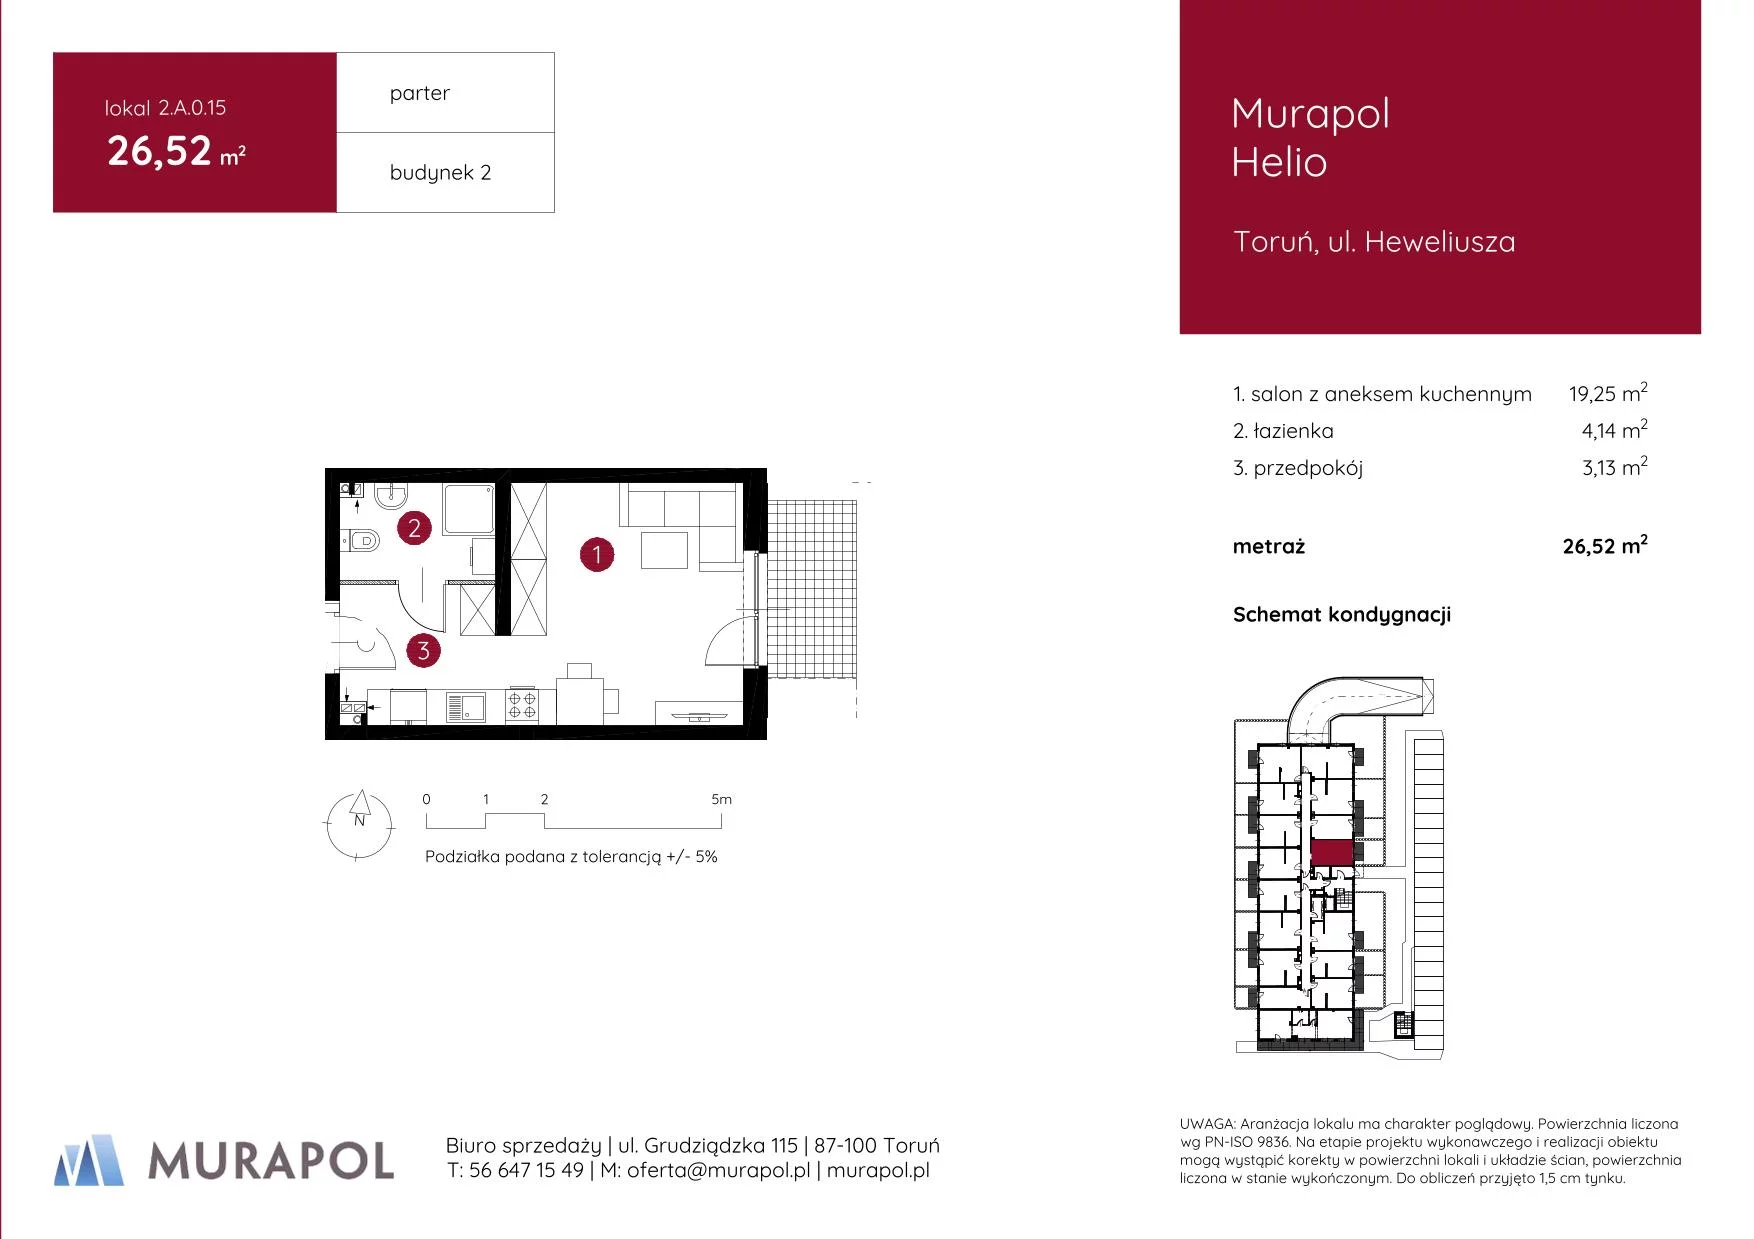 Mieszkanie 26,52 m², parter, oferta nr 2.A.0.15, Murapol Helio, Toruń, Wrzosy, JAR, ul. Heweliusza